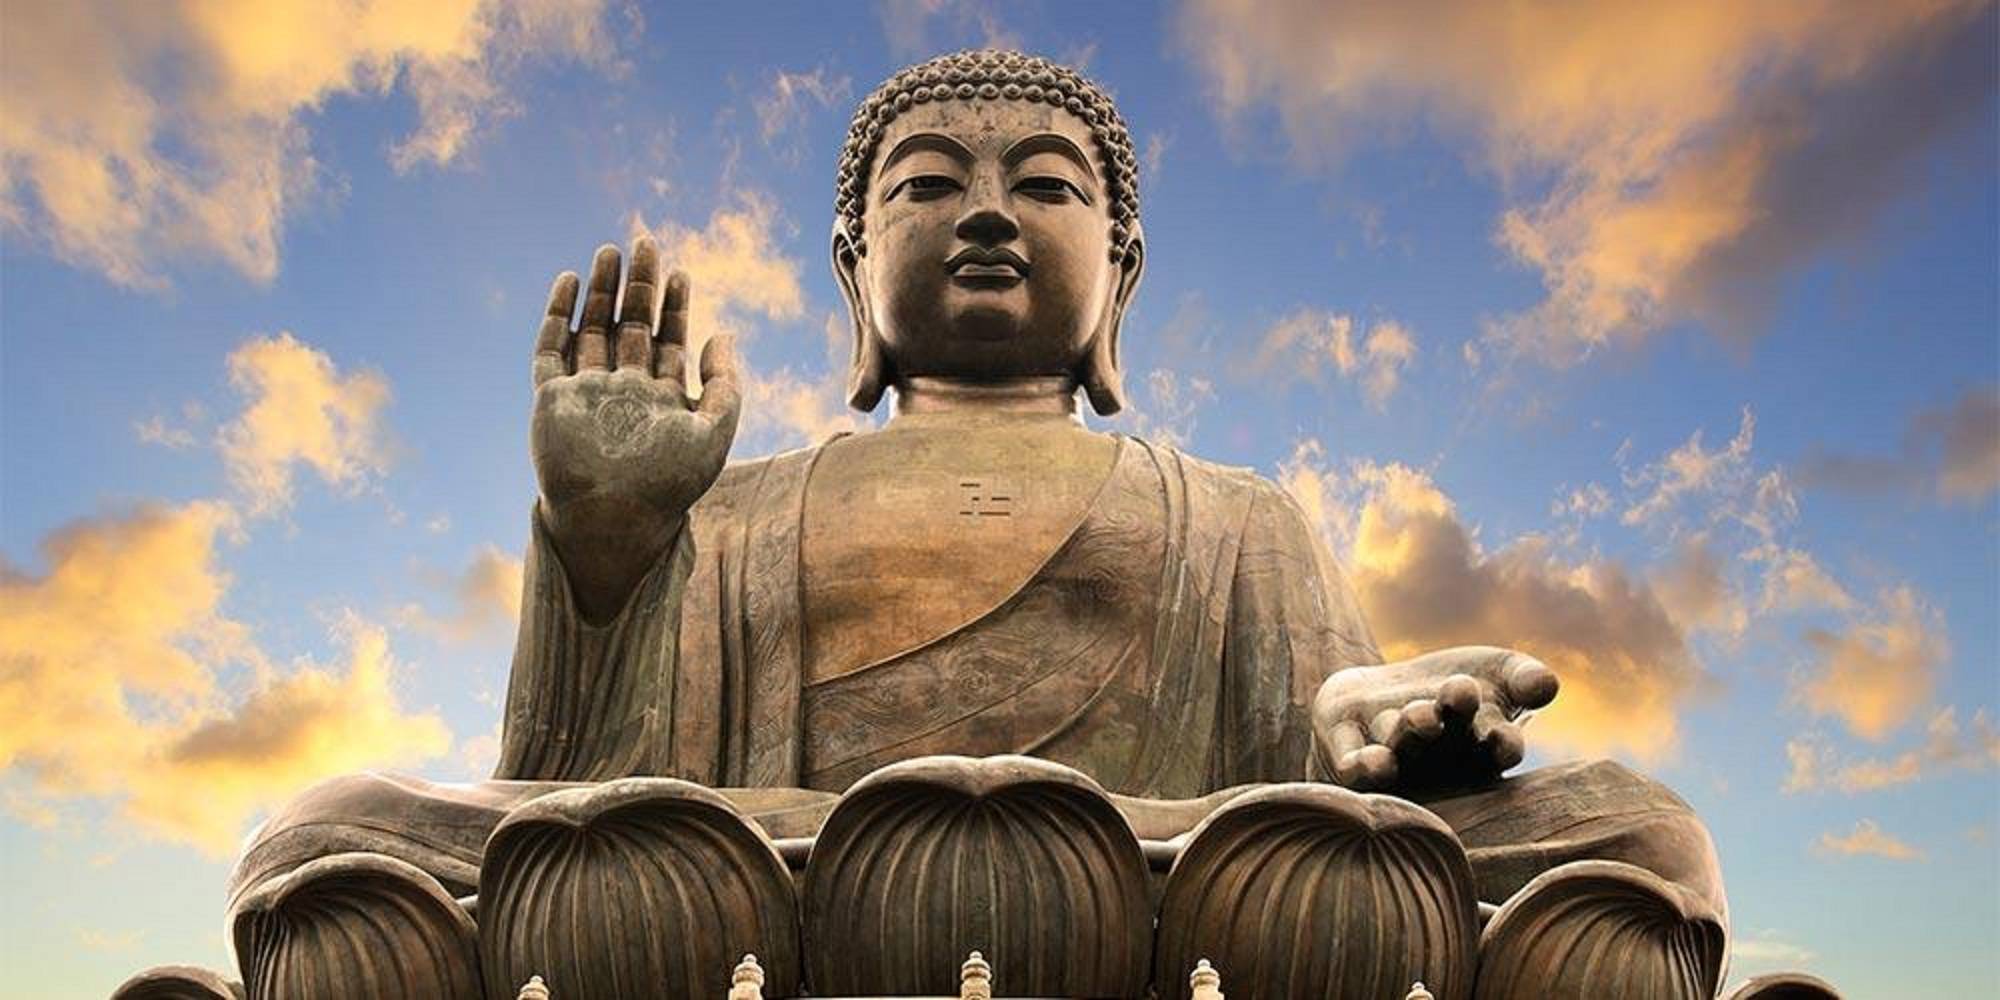 Budismul, o religie fondată acum 2500 de ani de către Siddharta Gautama